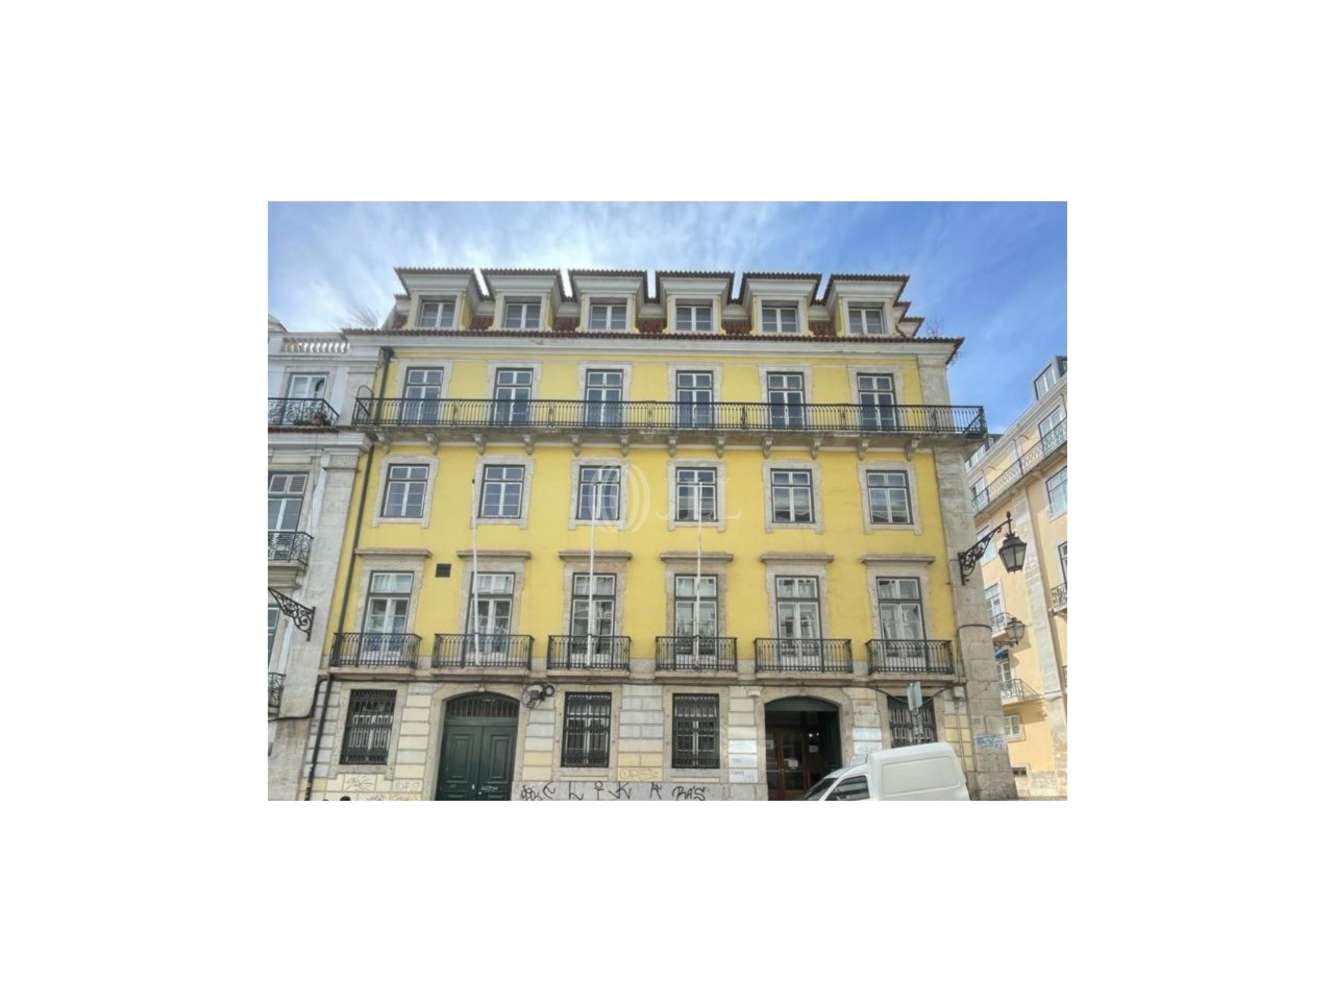 Escritórios Lisboa - Alecrim 55-57